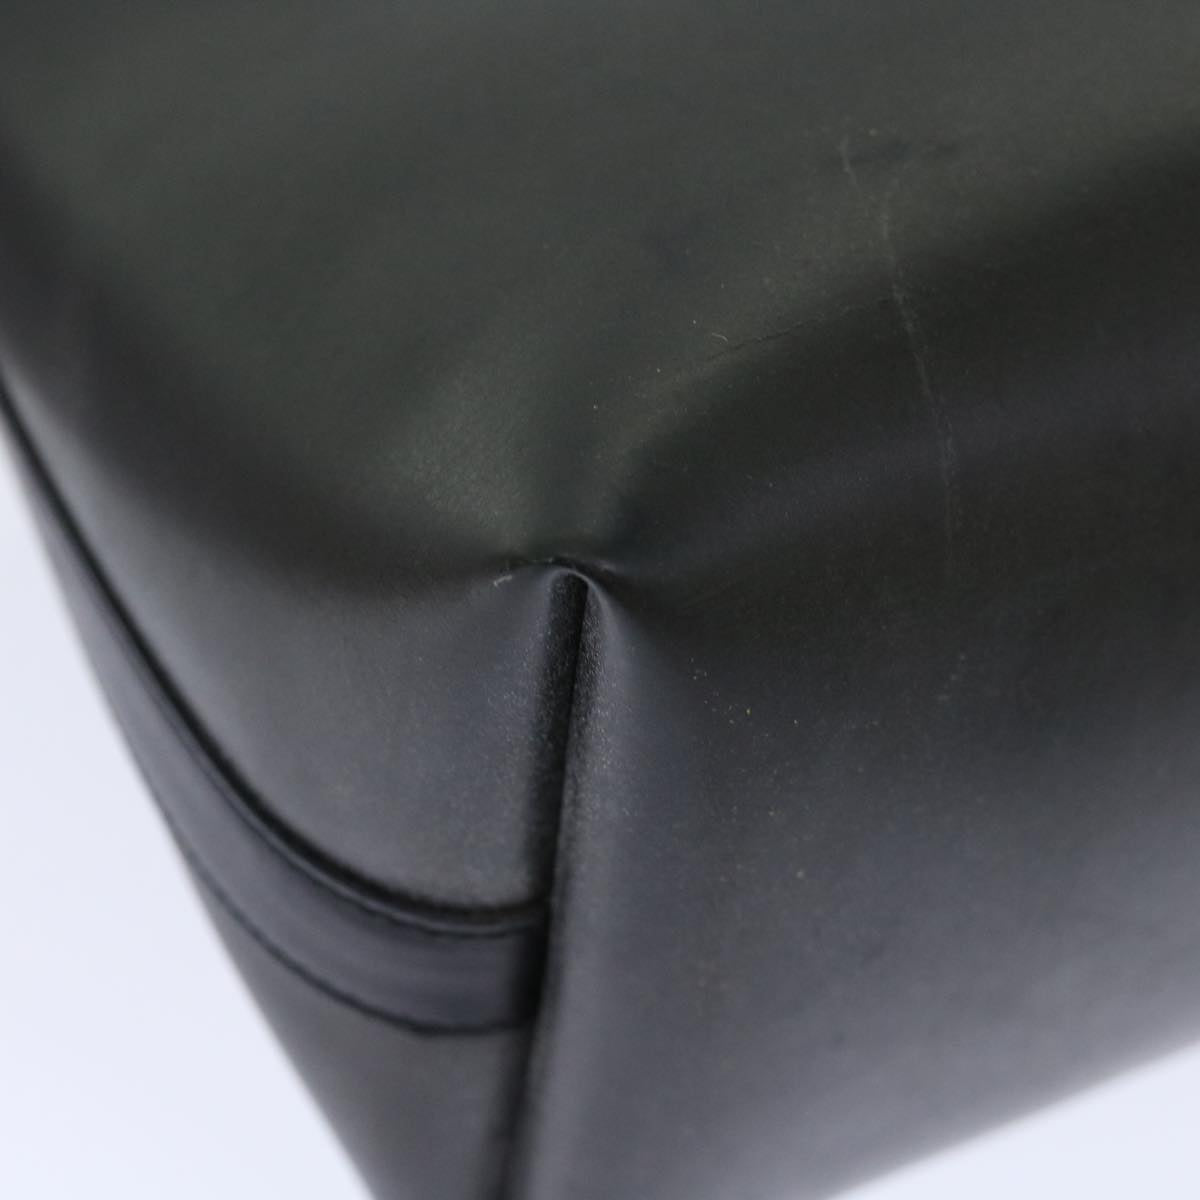 Salvatore Ferragamo Hand Bag Leather Black Auth 71582